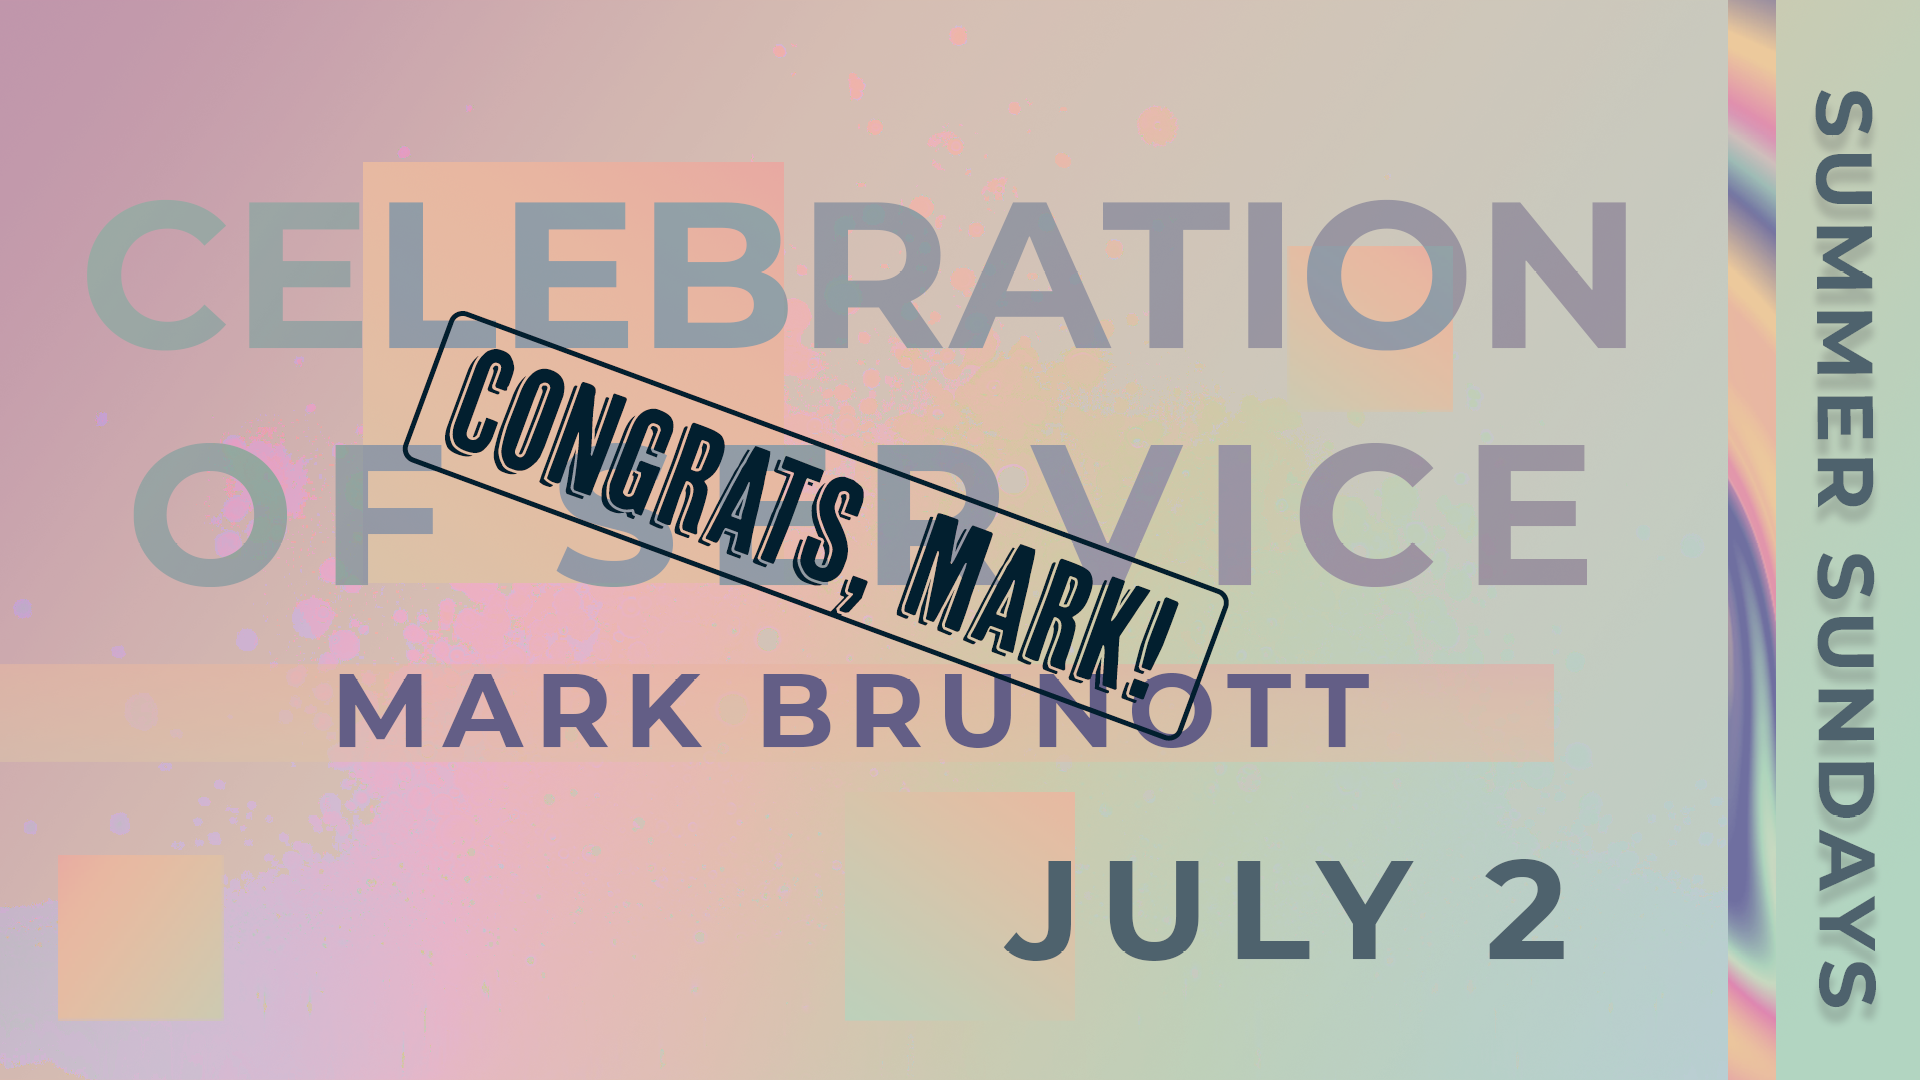 Congrats, Mark!